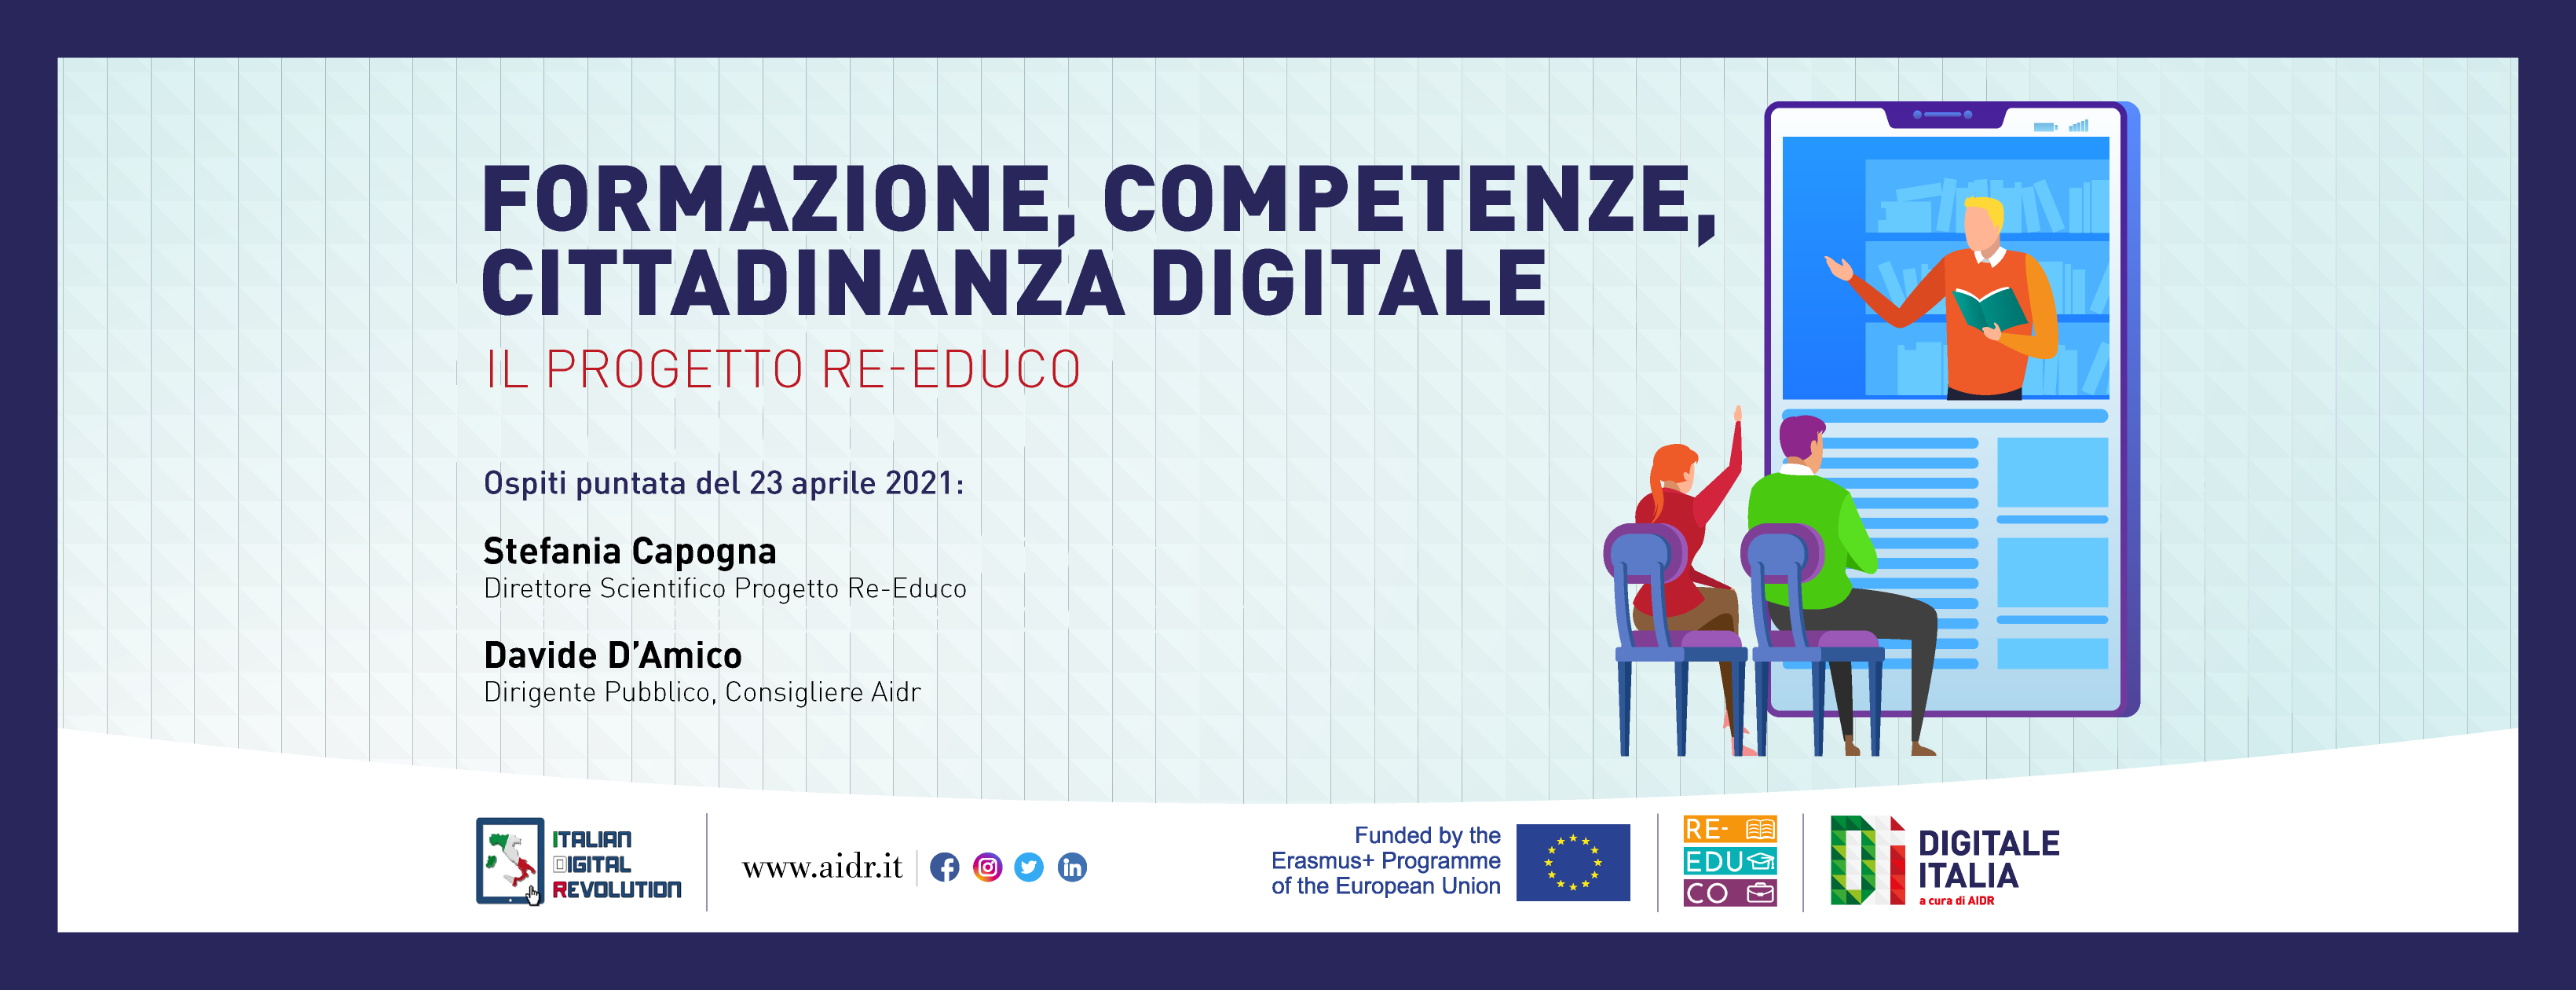 La formazione dei cittadini digitali, il ruolo del progetto Re-Educo. Approfondimento a Digitale Italia